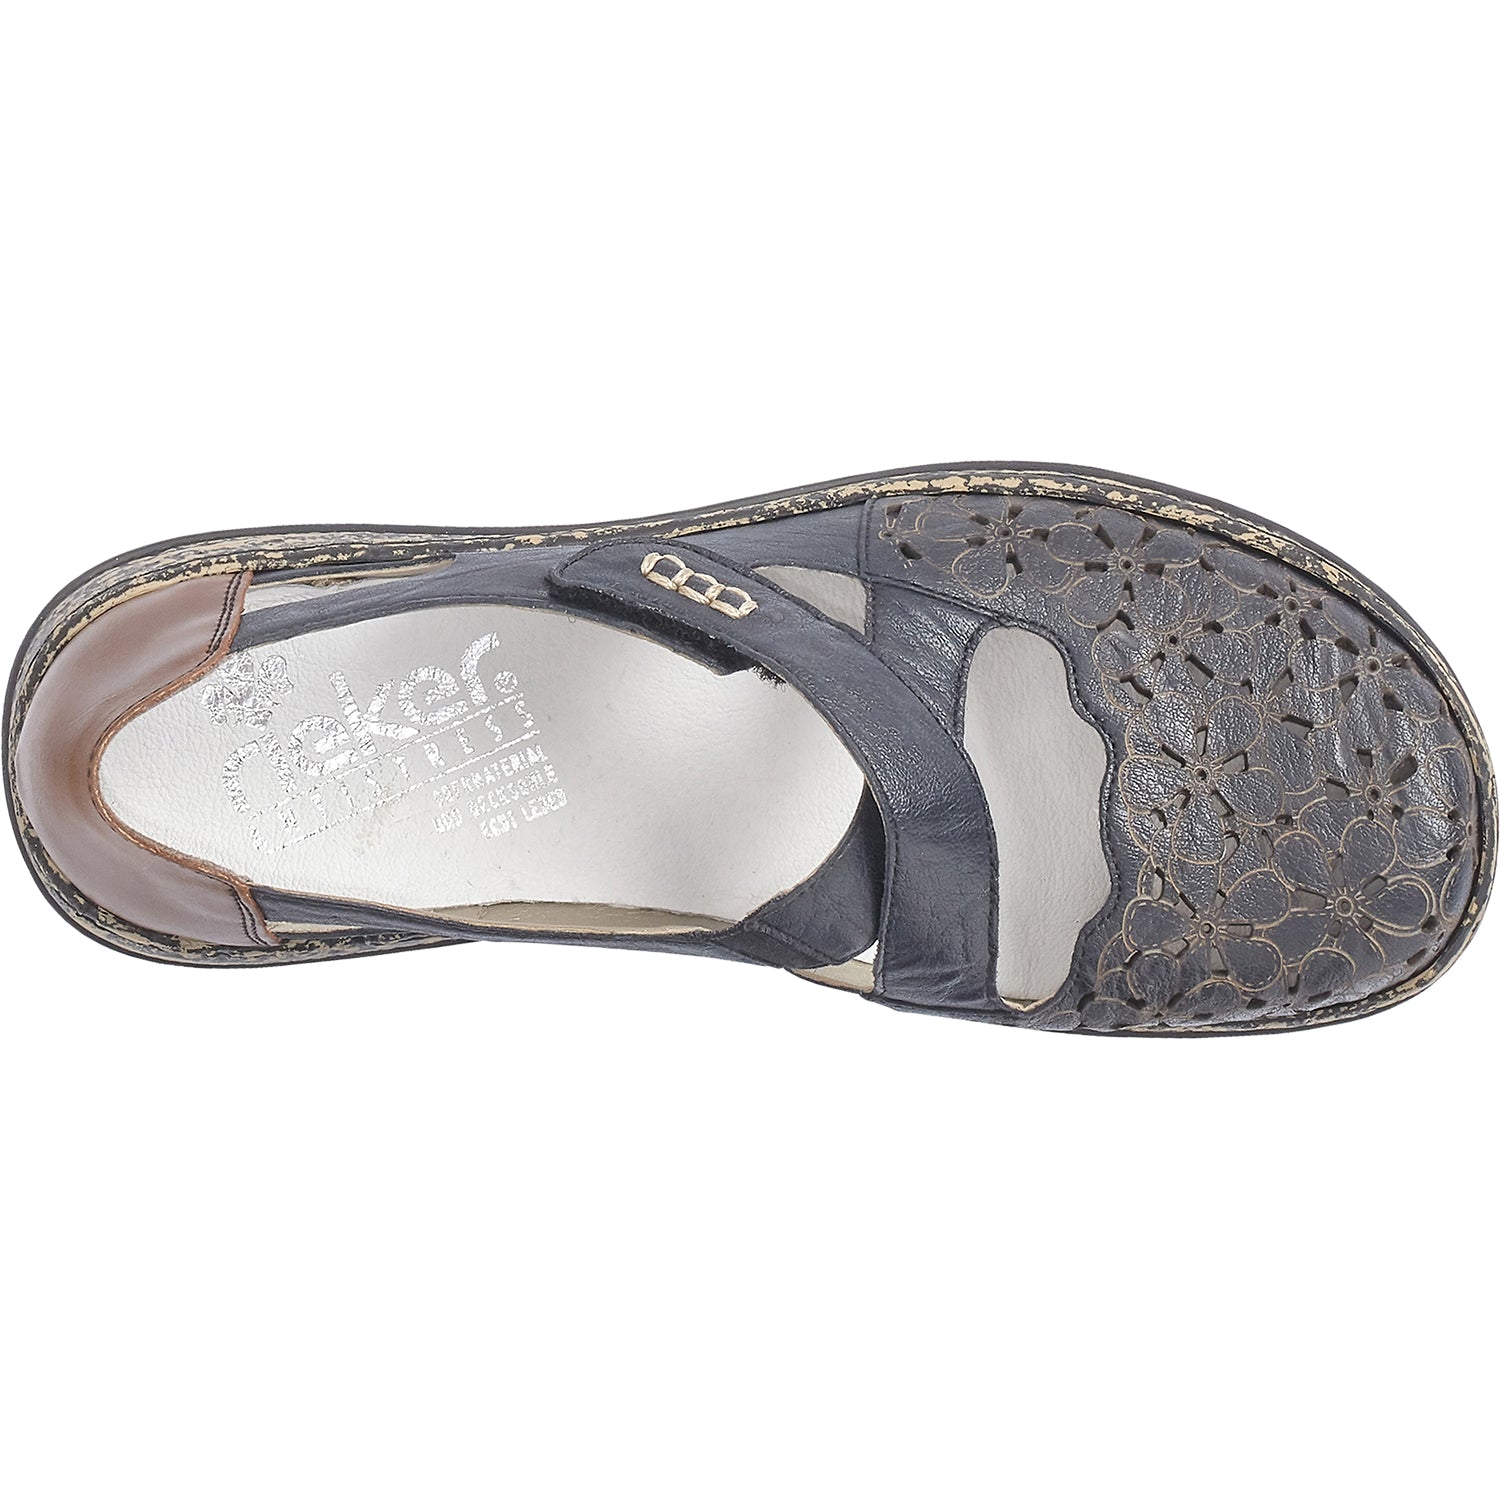 Rieker 463H4-14 | Women's Slip-On Shoes | Footwear etc.